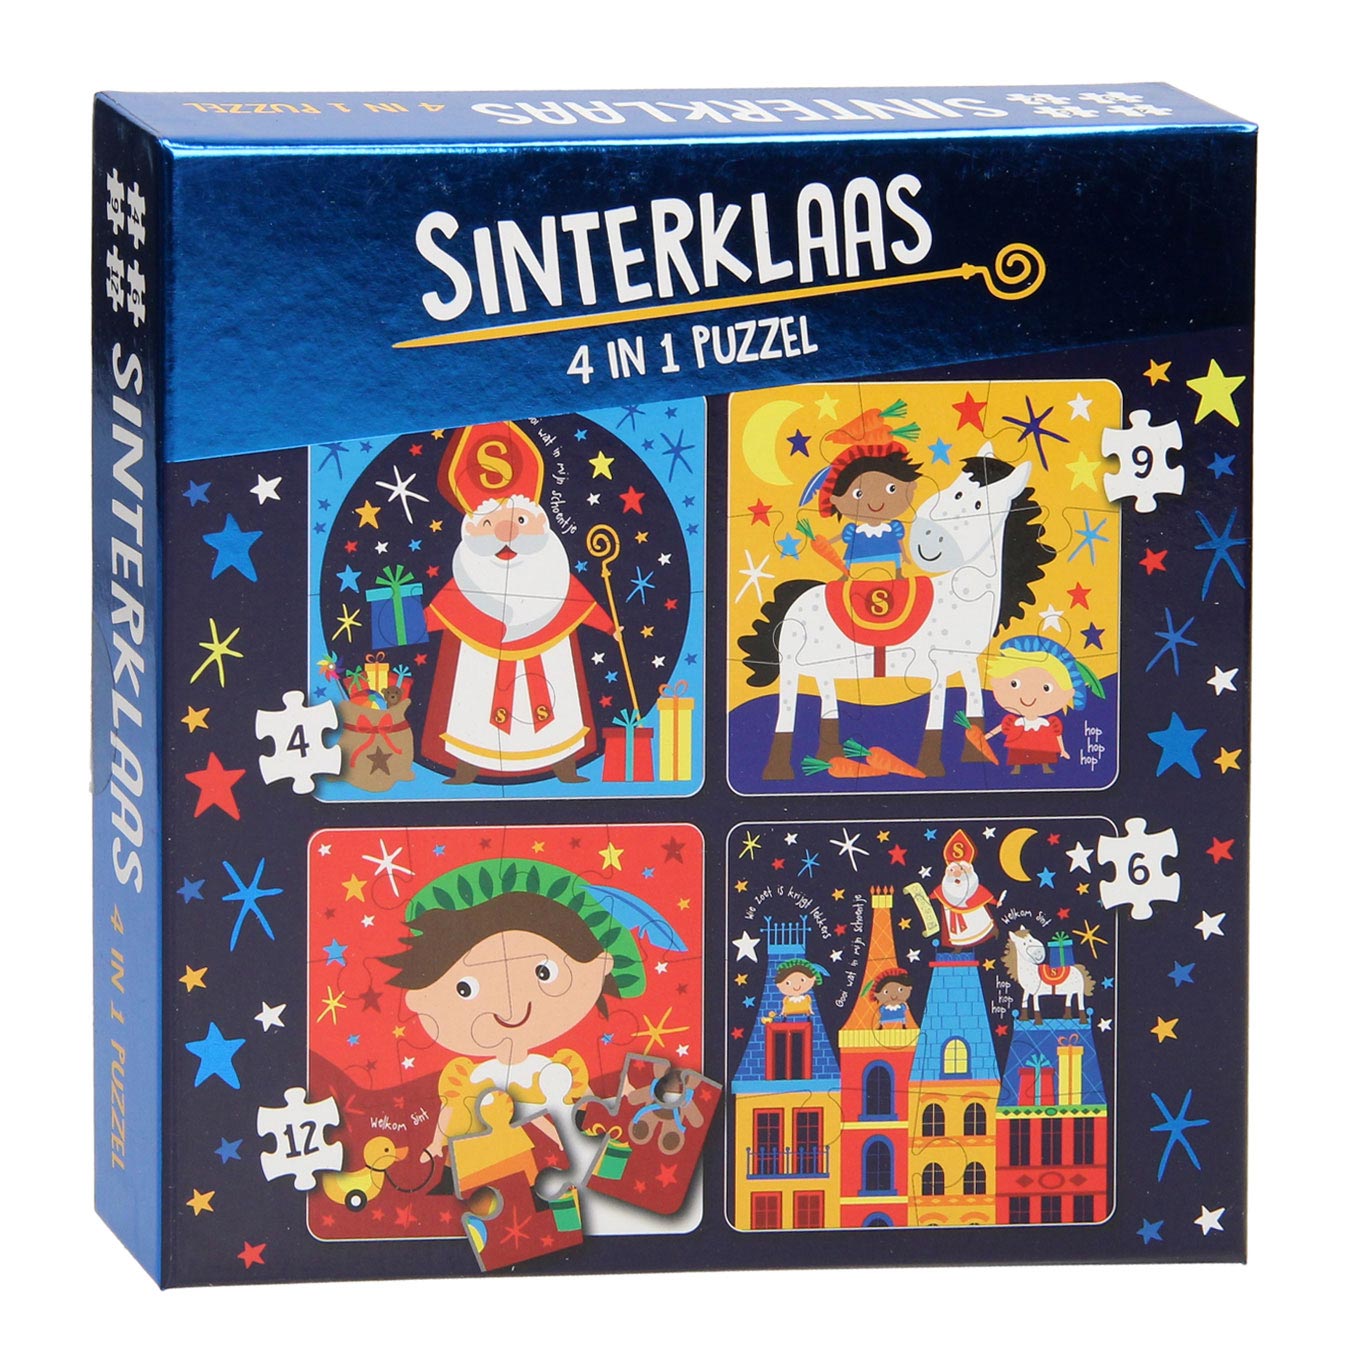 Bedienen Gedachte US dollar 4in1 Puzzel Sinterklaas online kopen | Lobbes Speelgoed